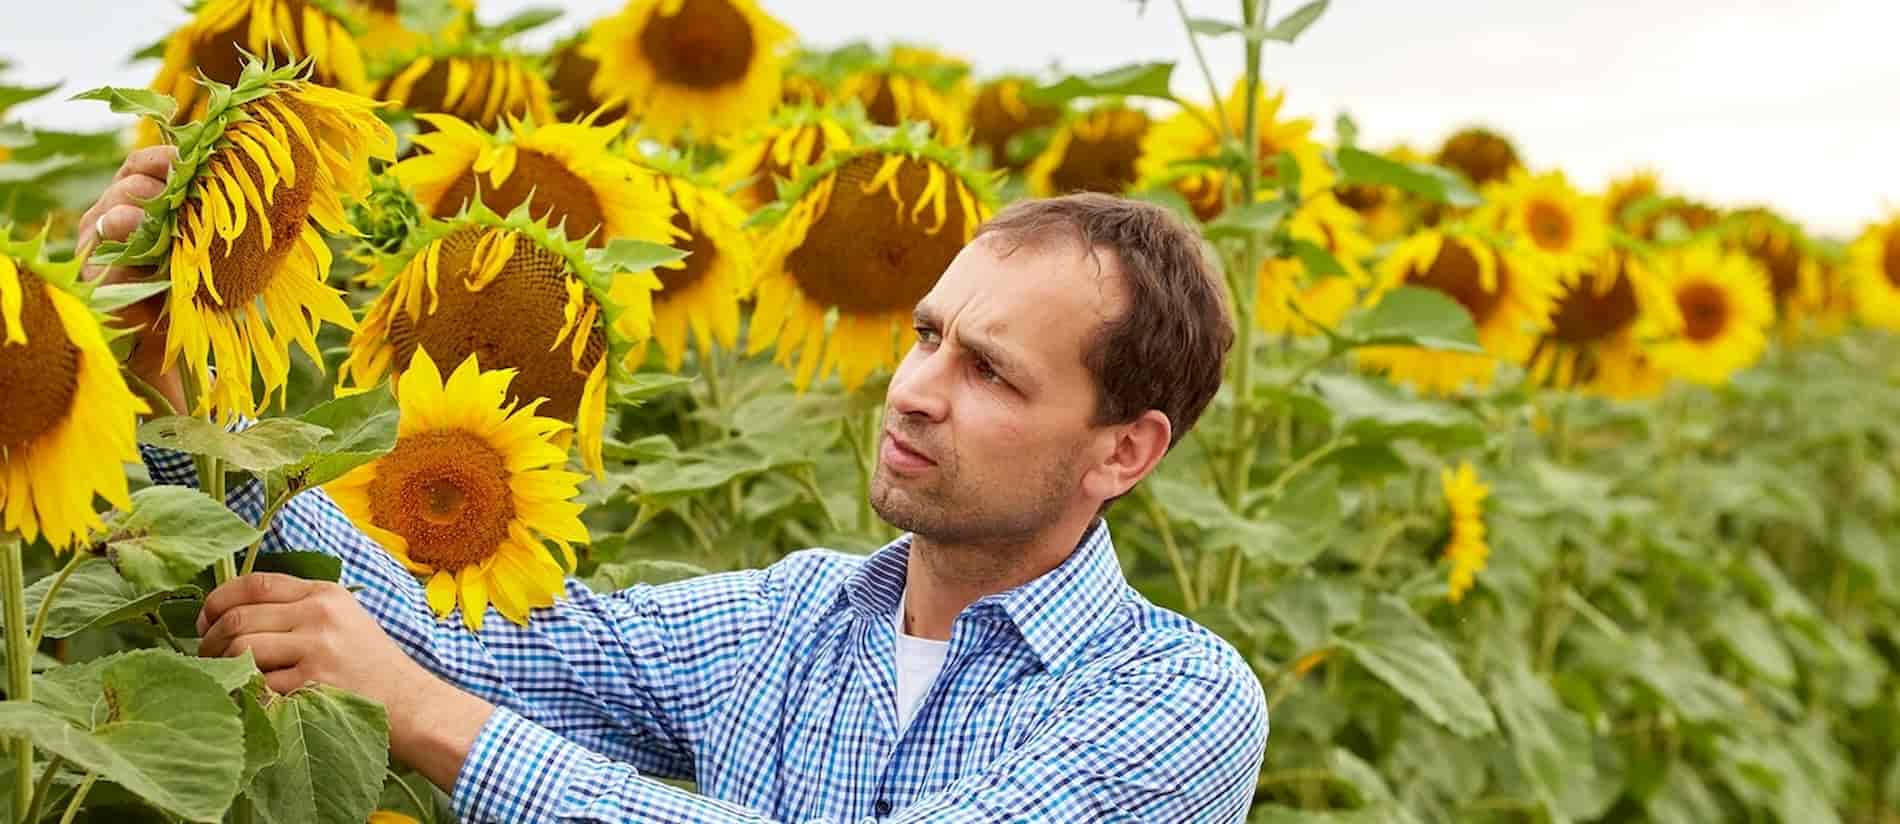 Anton Welzhofer prüft die Qualität im Sonnenblumenfeld.